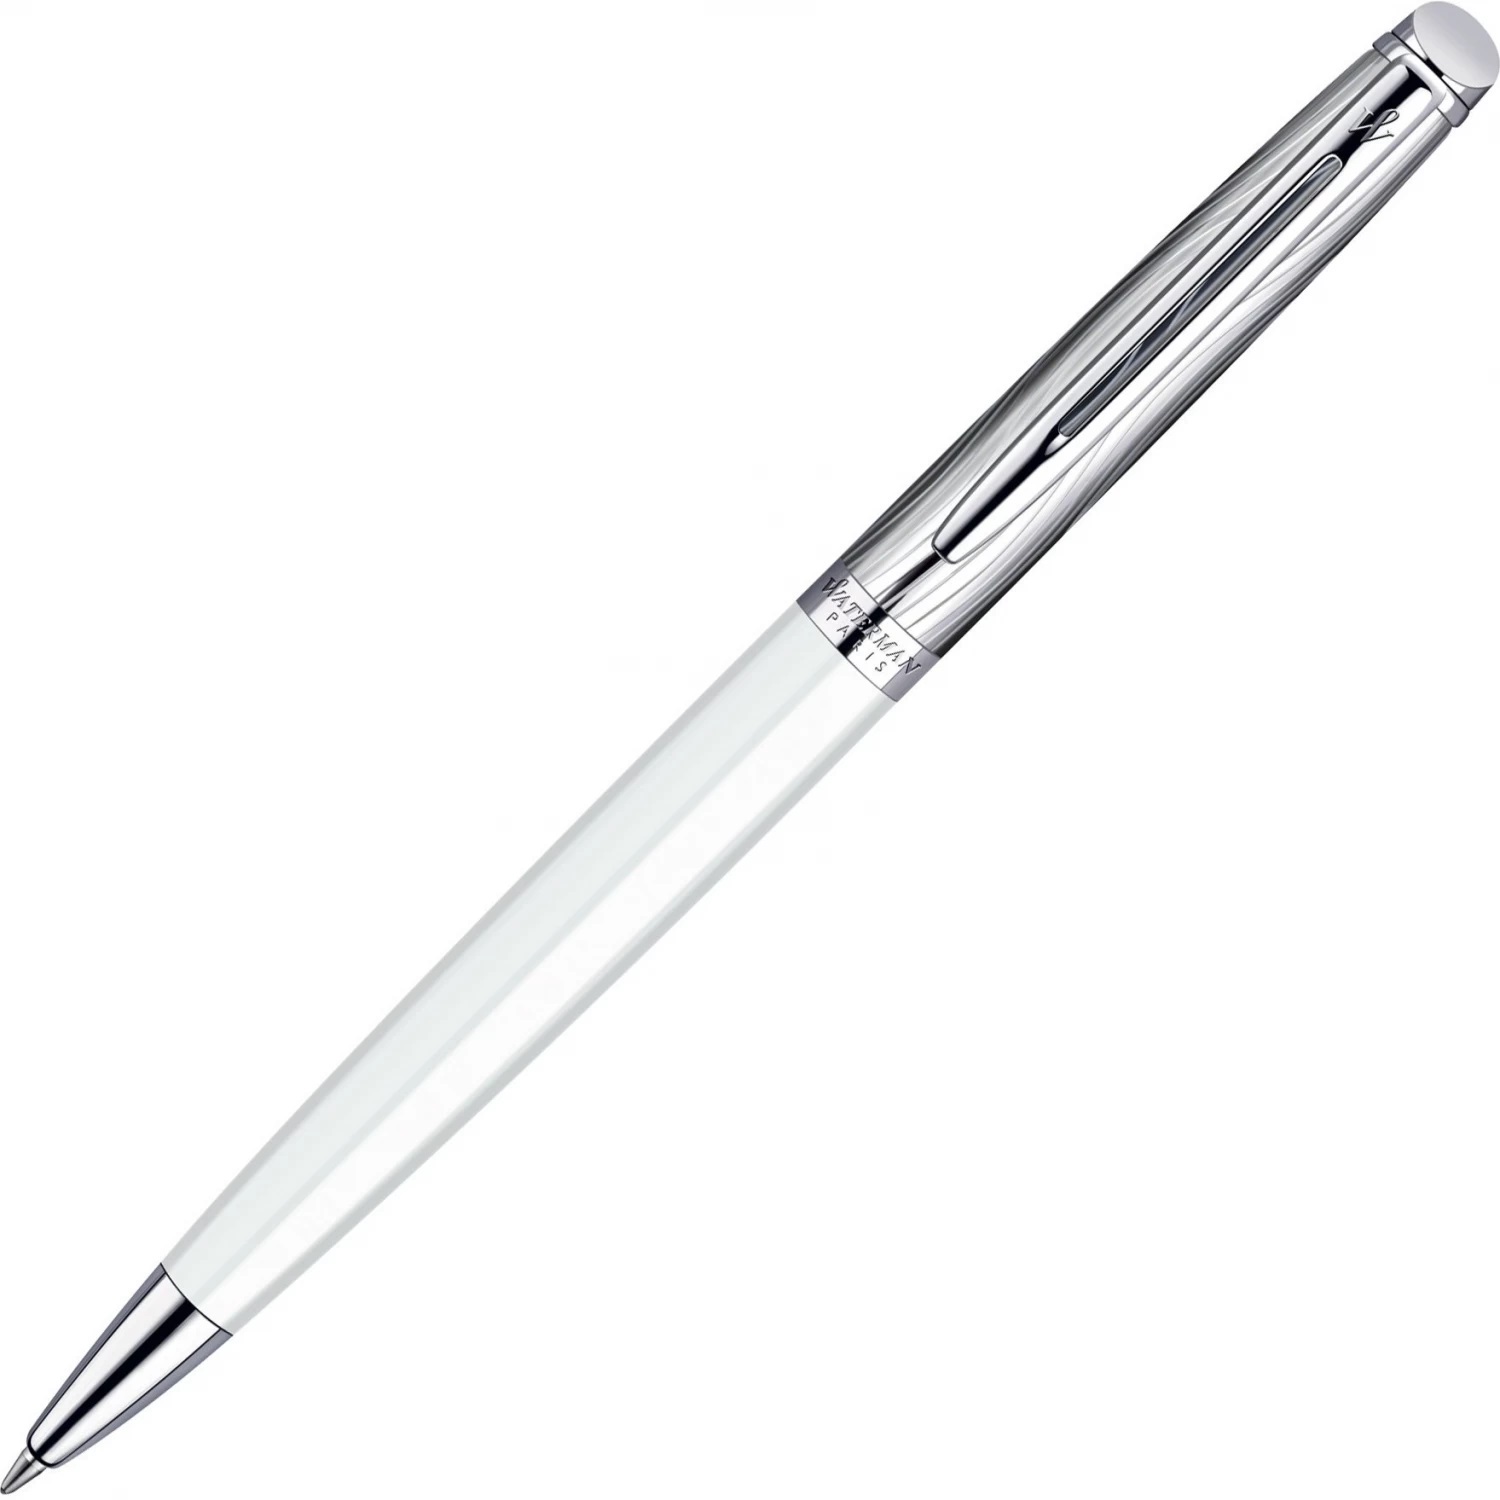 Шариковая ручка Waterman Hemisphere S0921310 (S0921310) ручка подарочная шариковая в кожзам футляре автоматическая пб j корпус белый серебро